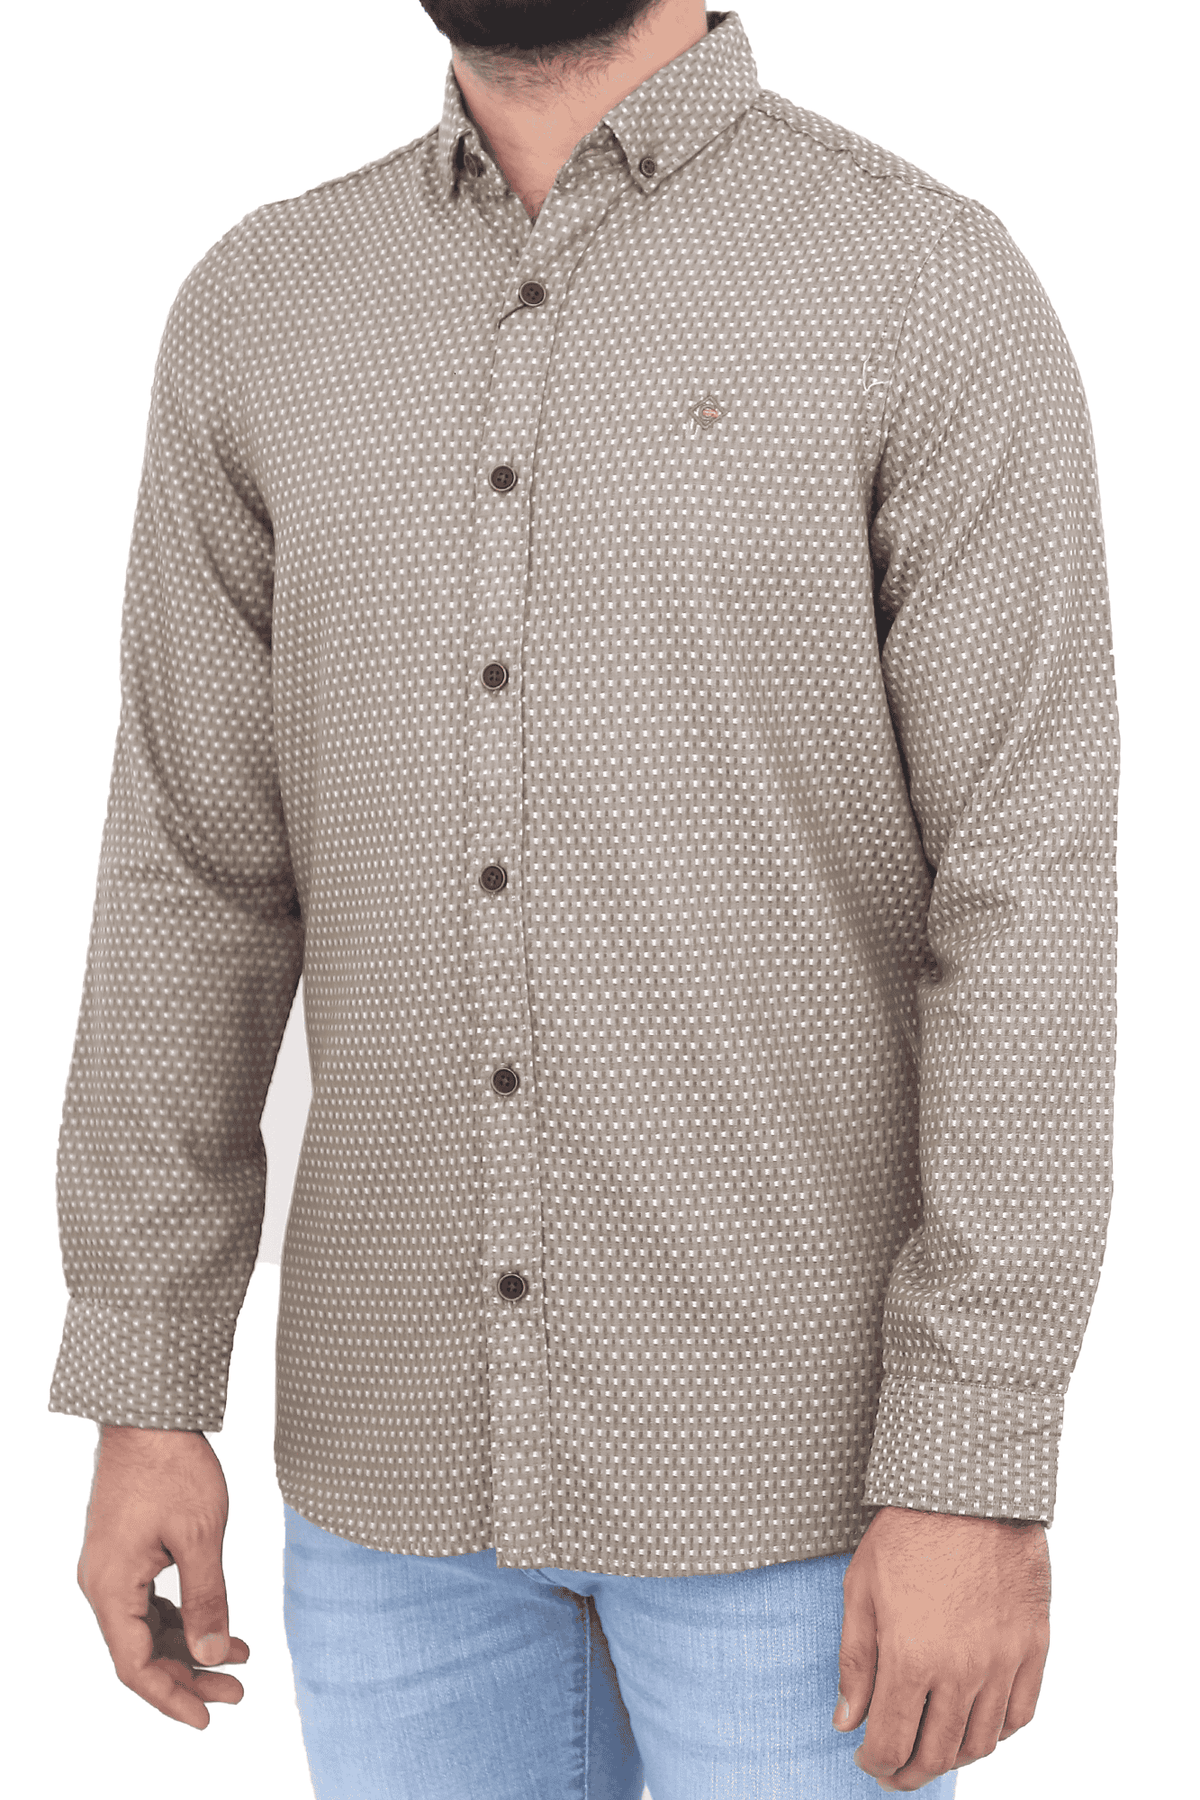 Men's Casual Shirt SHC-1717 Dotted Green